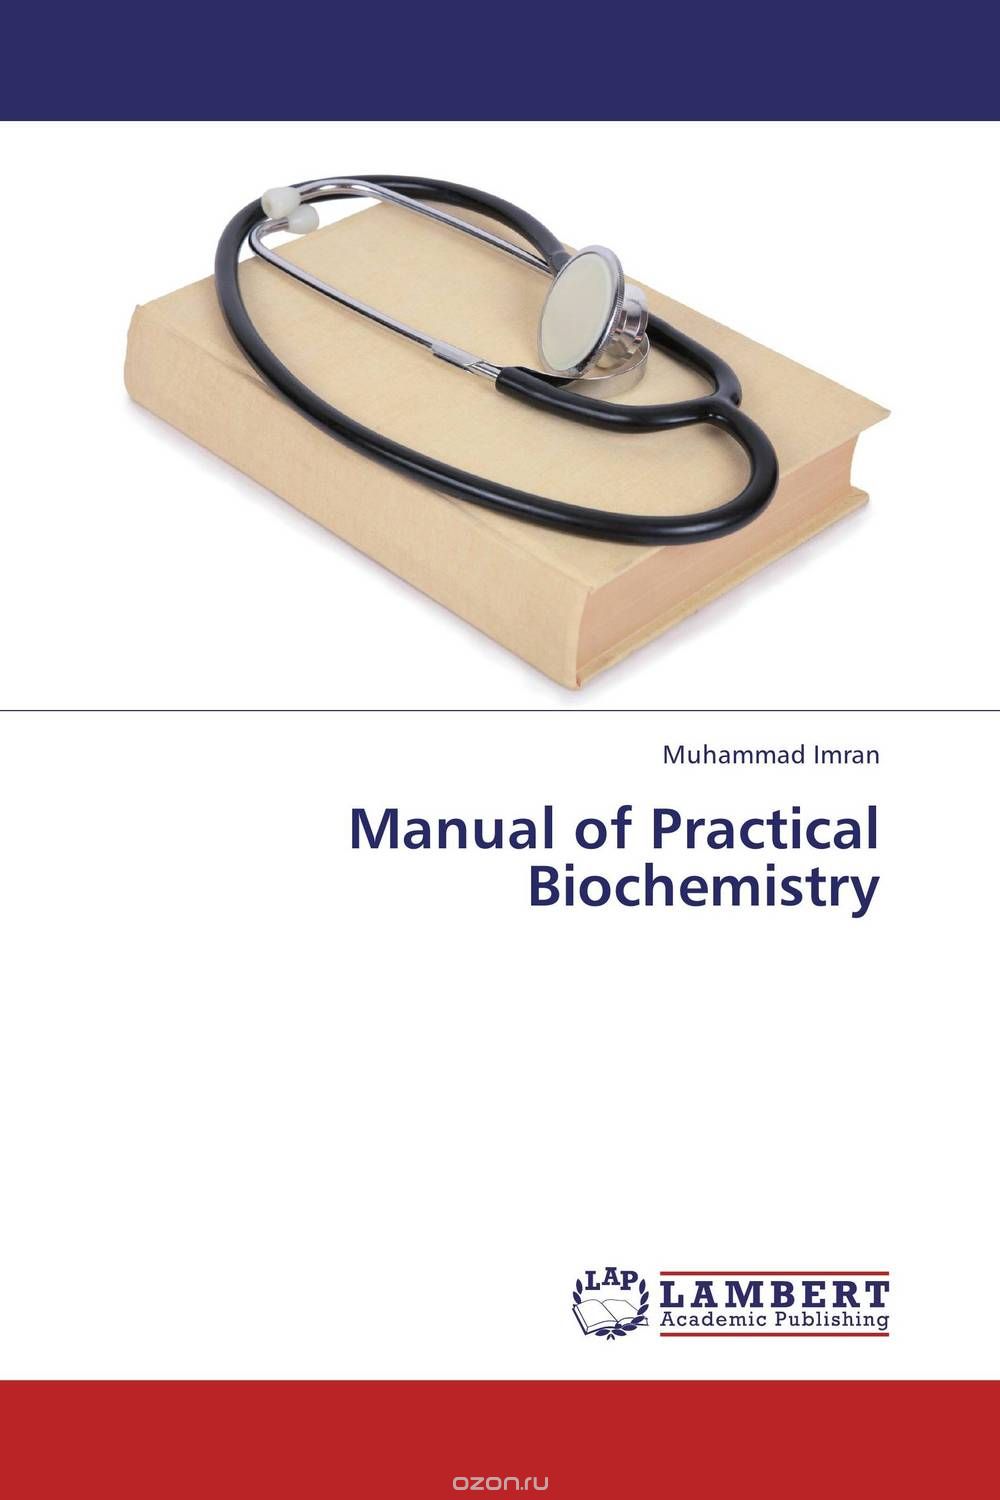 Скачать книгу "Manual of Practical Biochemistry"